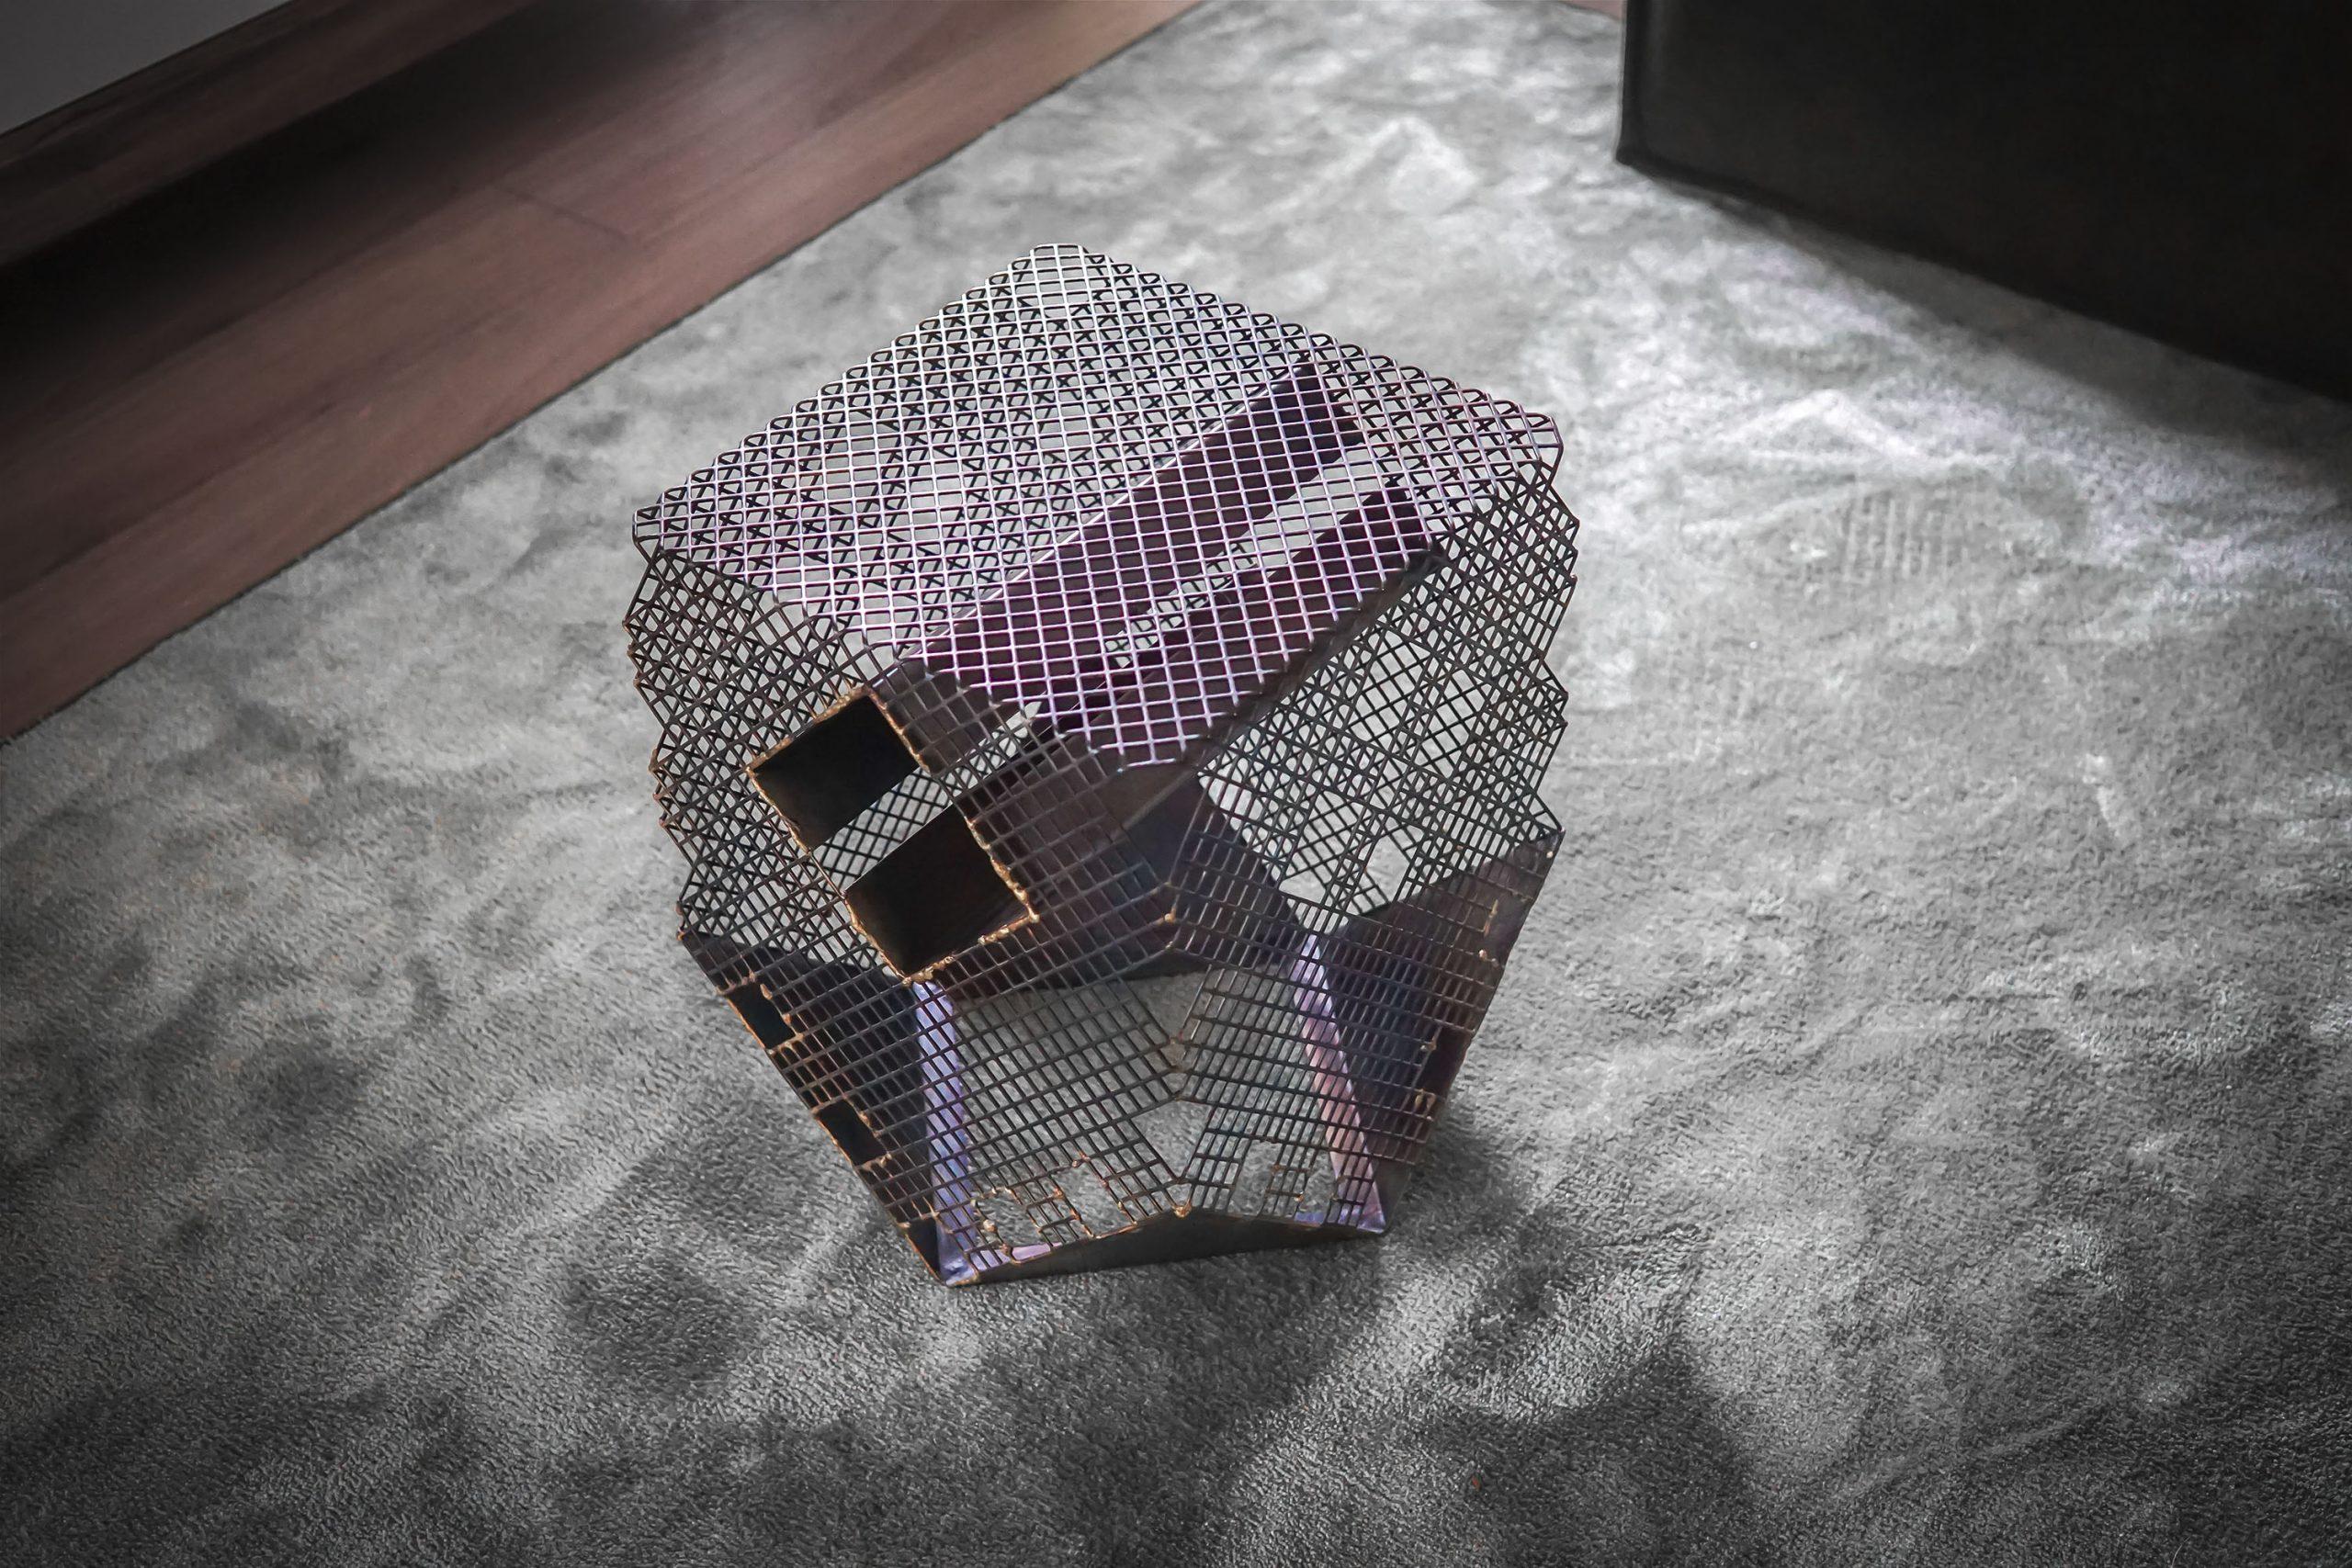 Dragon  Table d'appoint / tabouret sculptural en tôle perforée, conçu pour des assises collectives qui remettent en question la distanciation sociale et encouragent l'exploration de la perception visuelle du métal, à travers la profondeur et les